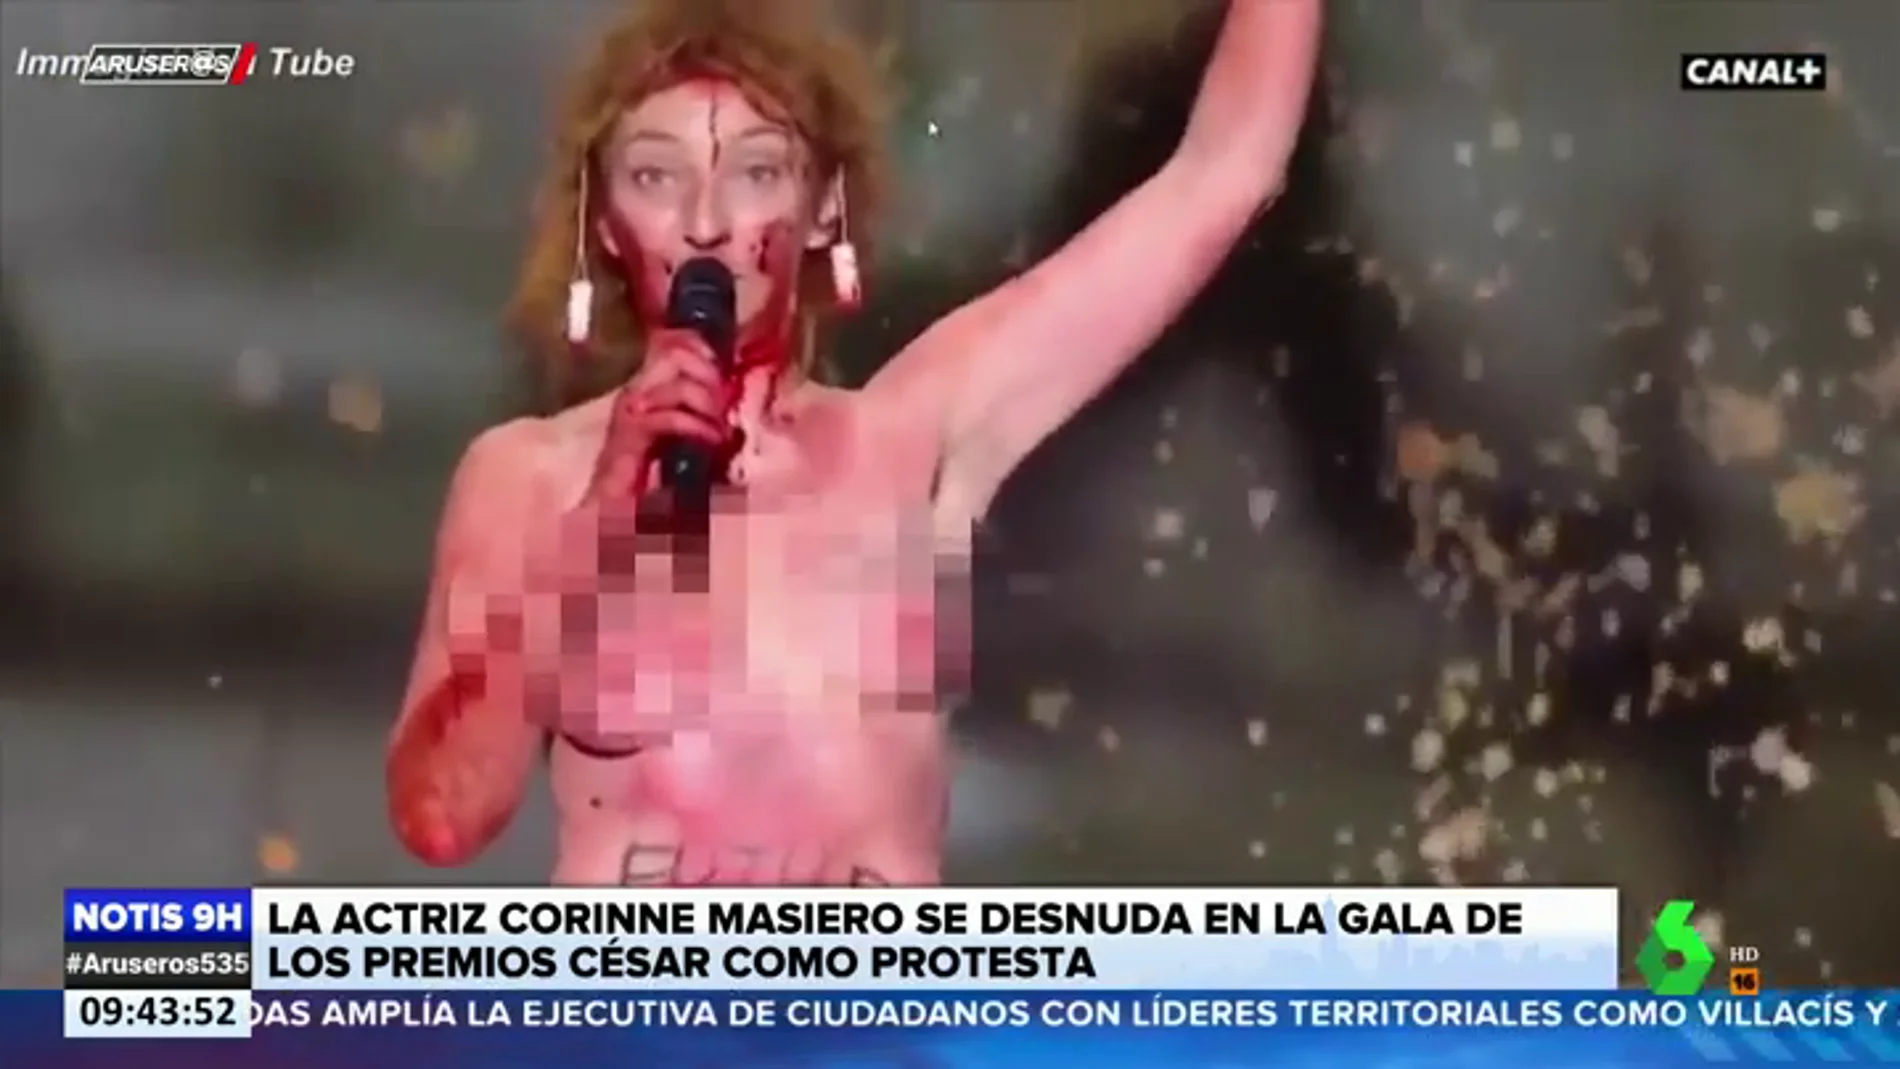 La actriz Corinne Masieros se desnuda en los Premios César en protesta contra el cierre de la cultura en Francia